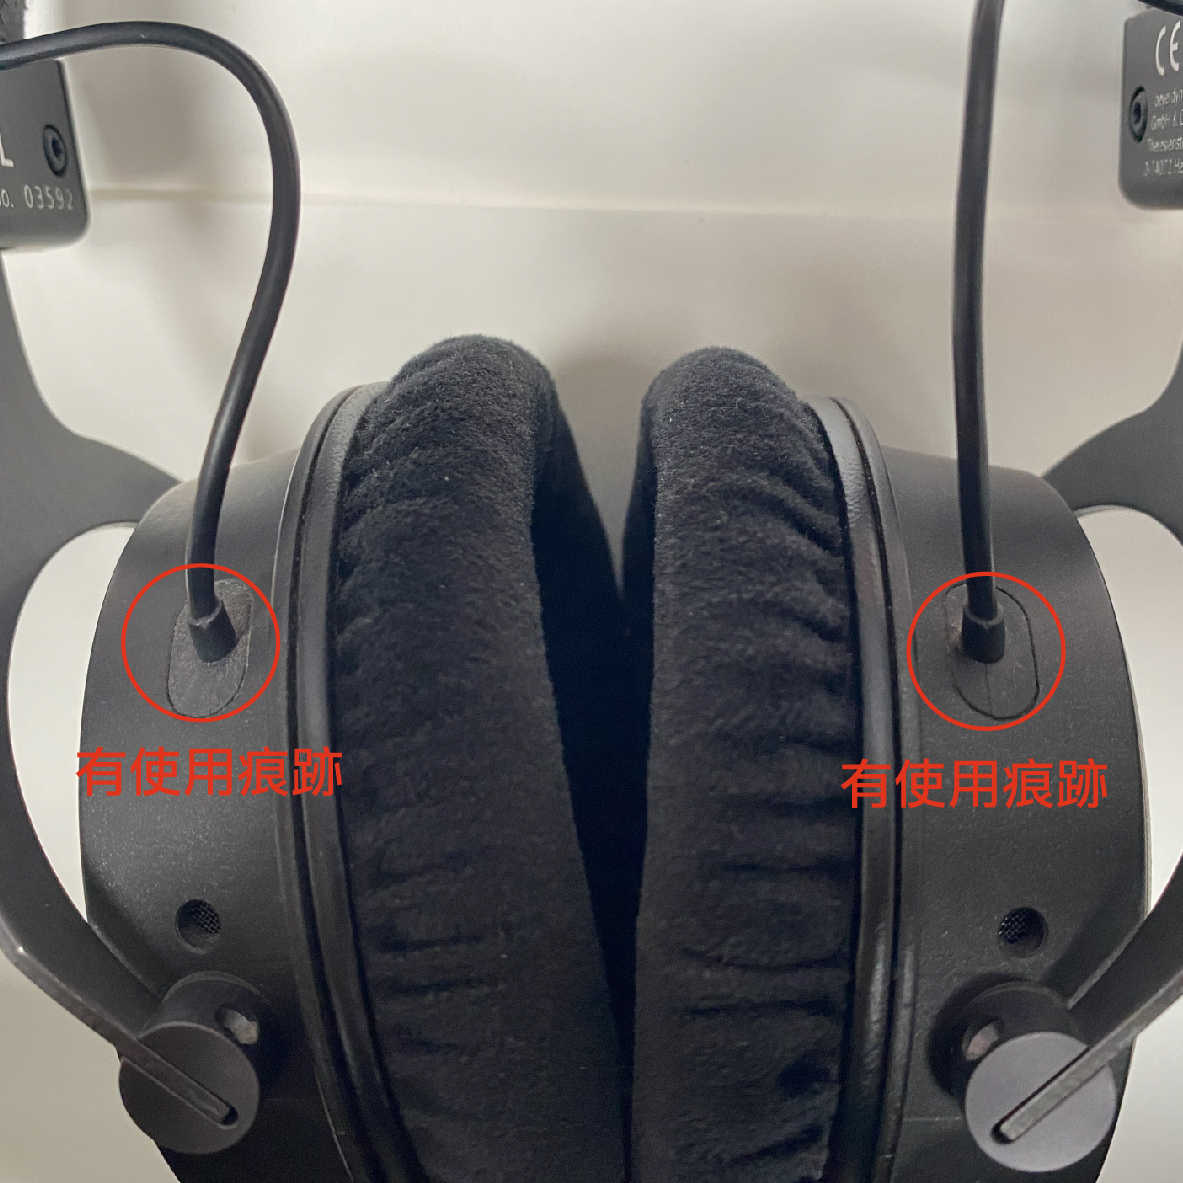 【福利機】Beyerdynamic 拜耳 DT1770 PRO 旗艦 專業 監聽 耳罩式耳機 | 金曲音響